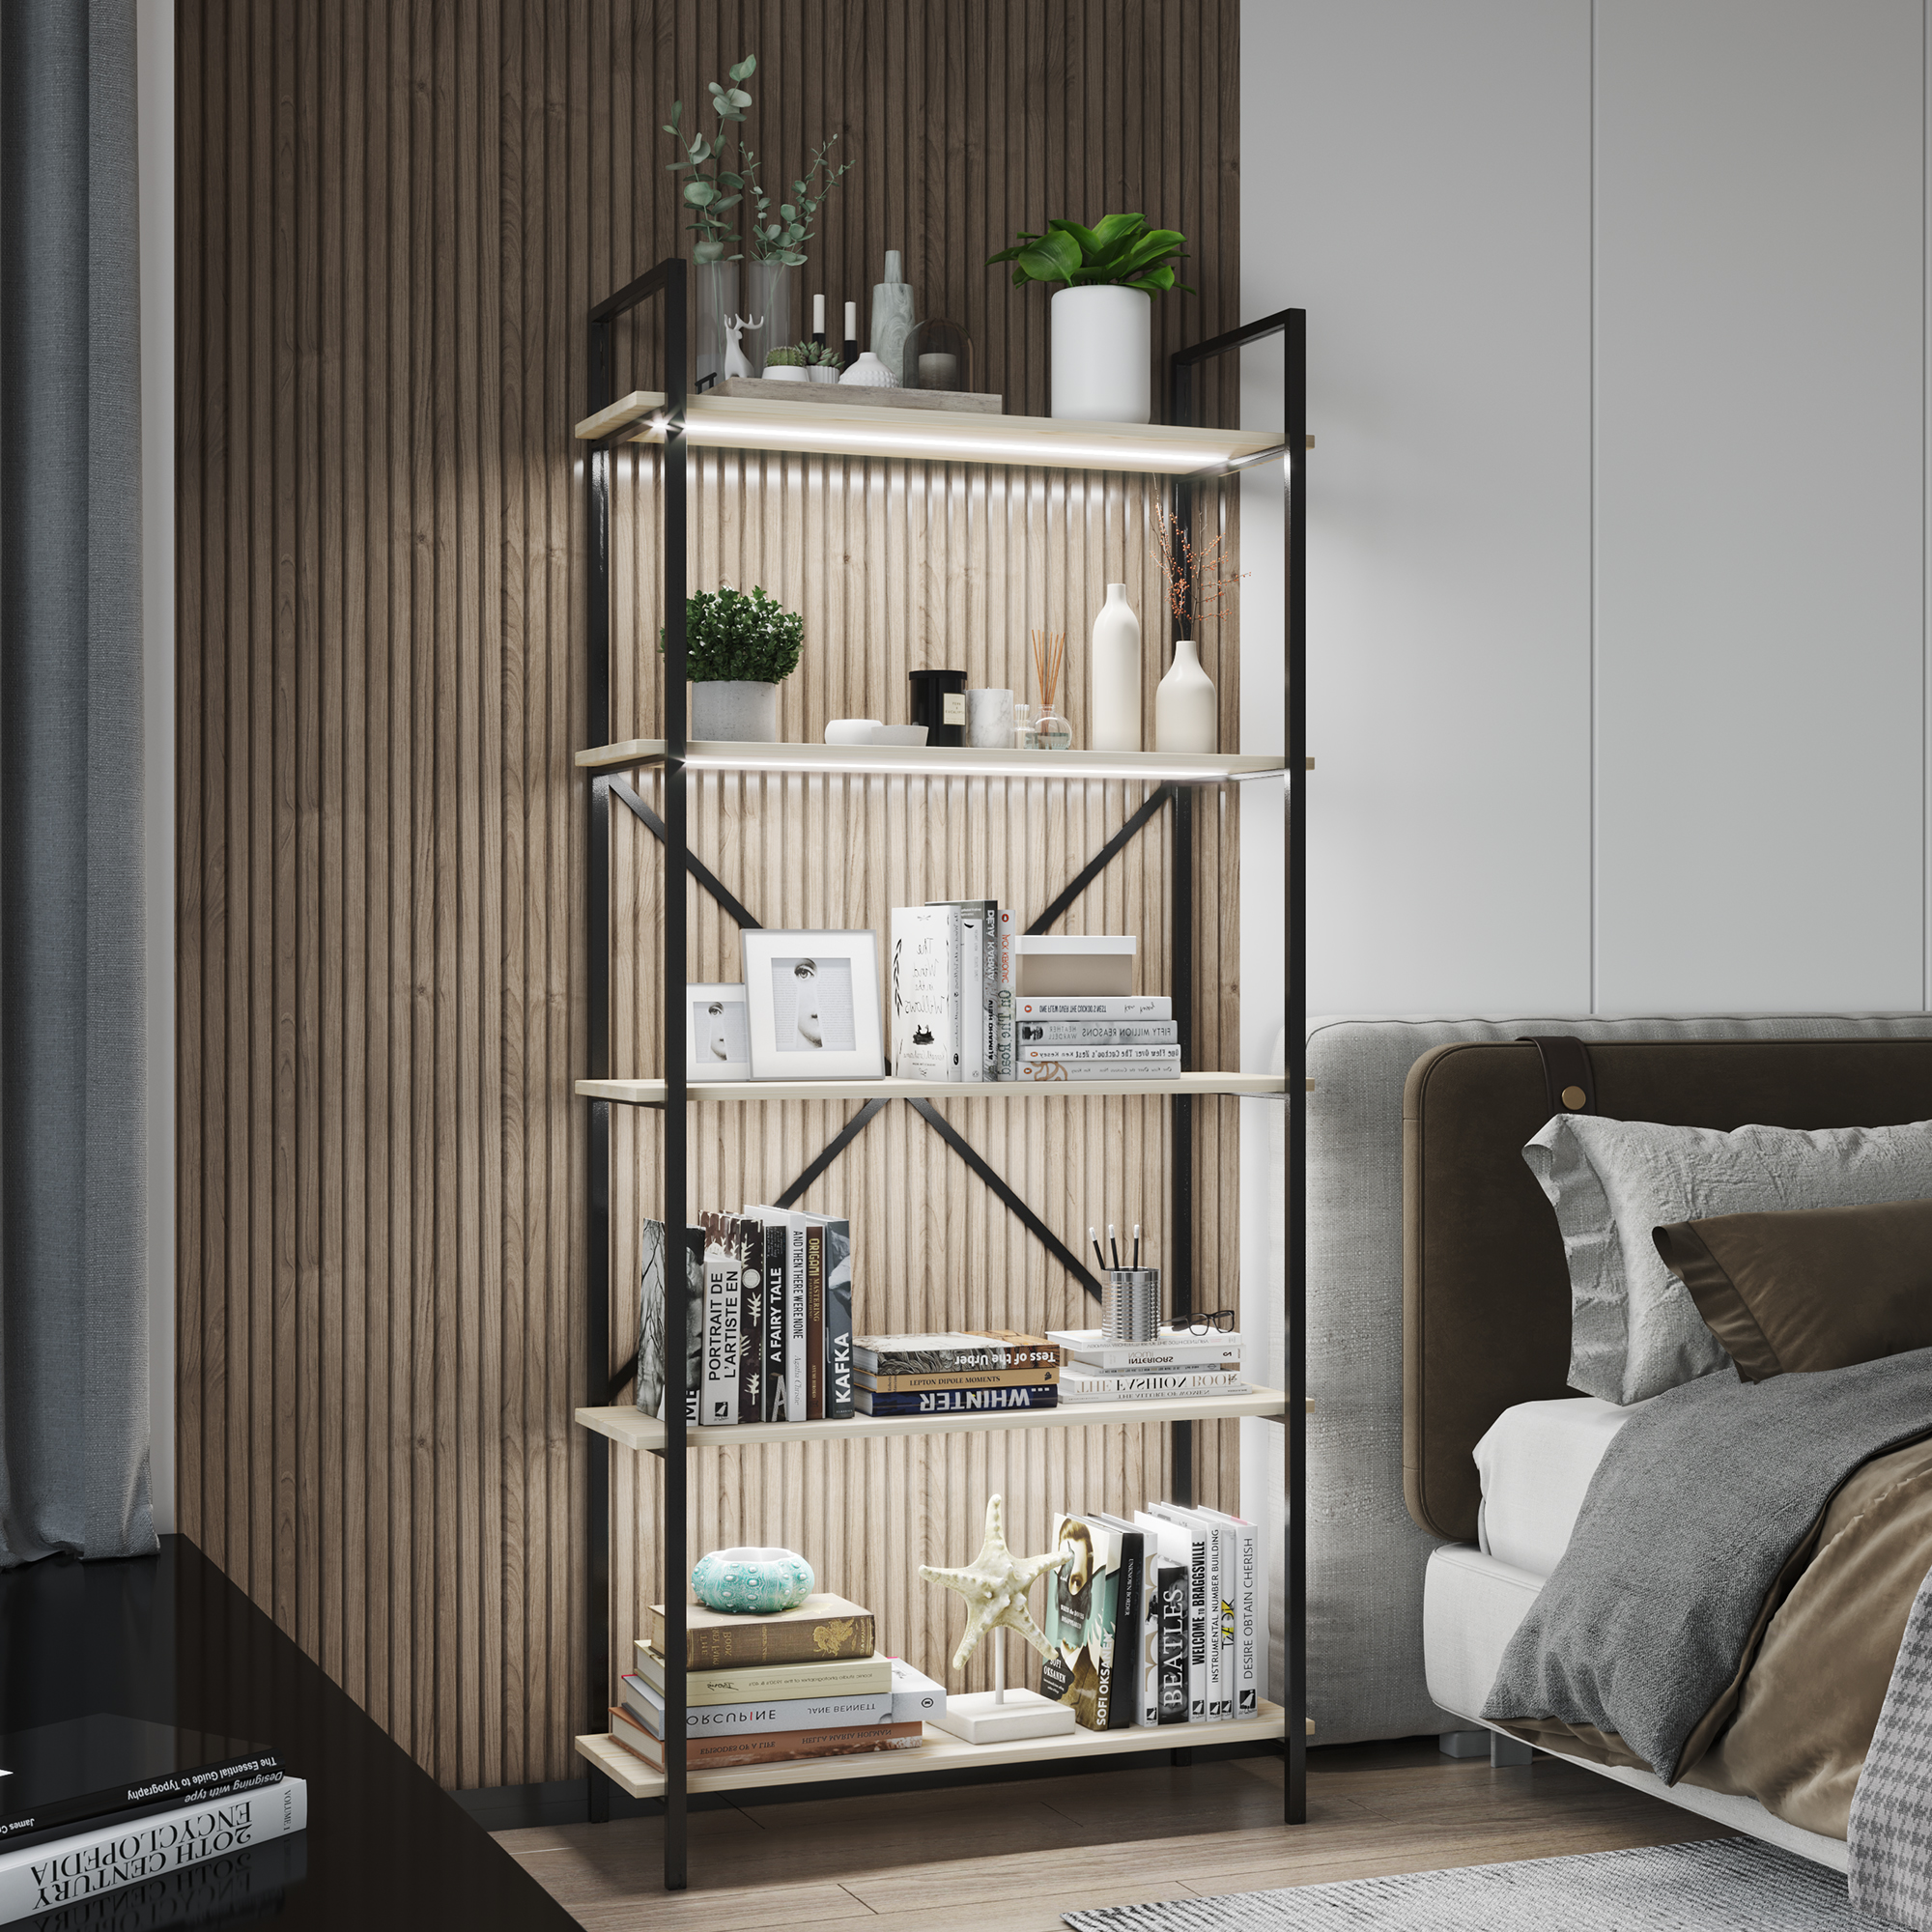 LVSOMT Wood Log Color 5-Shelf Bookcase with Led Light Induction